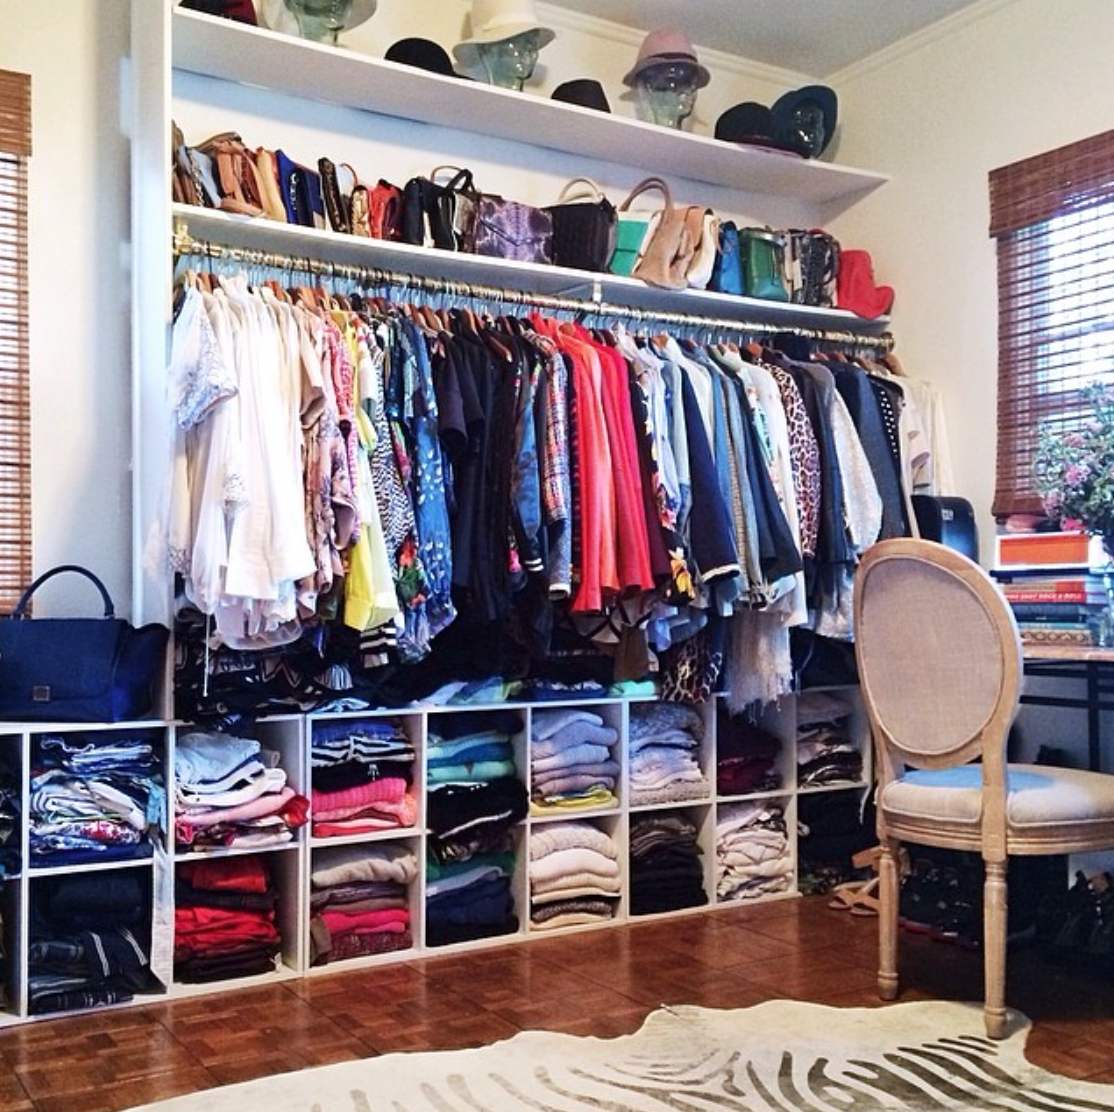 Organize clothes